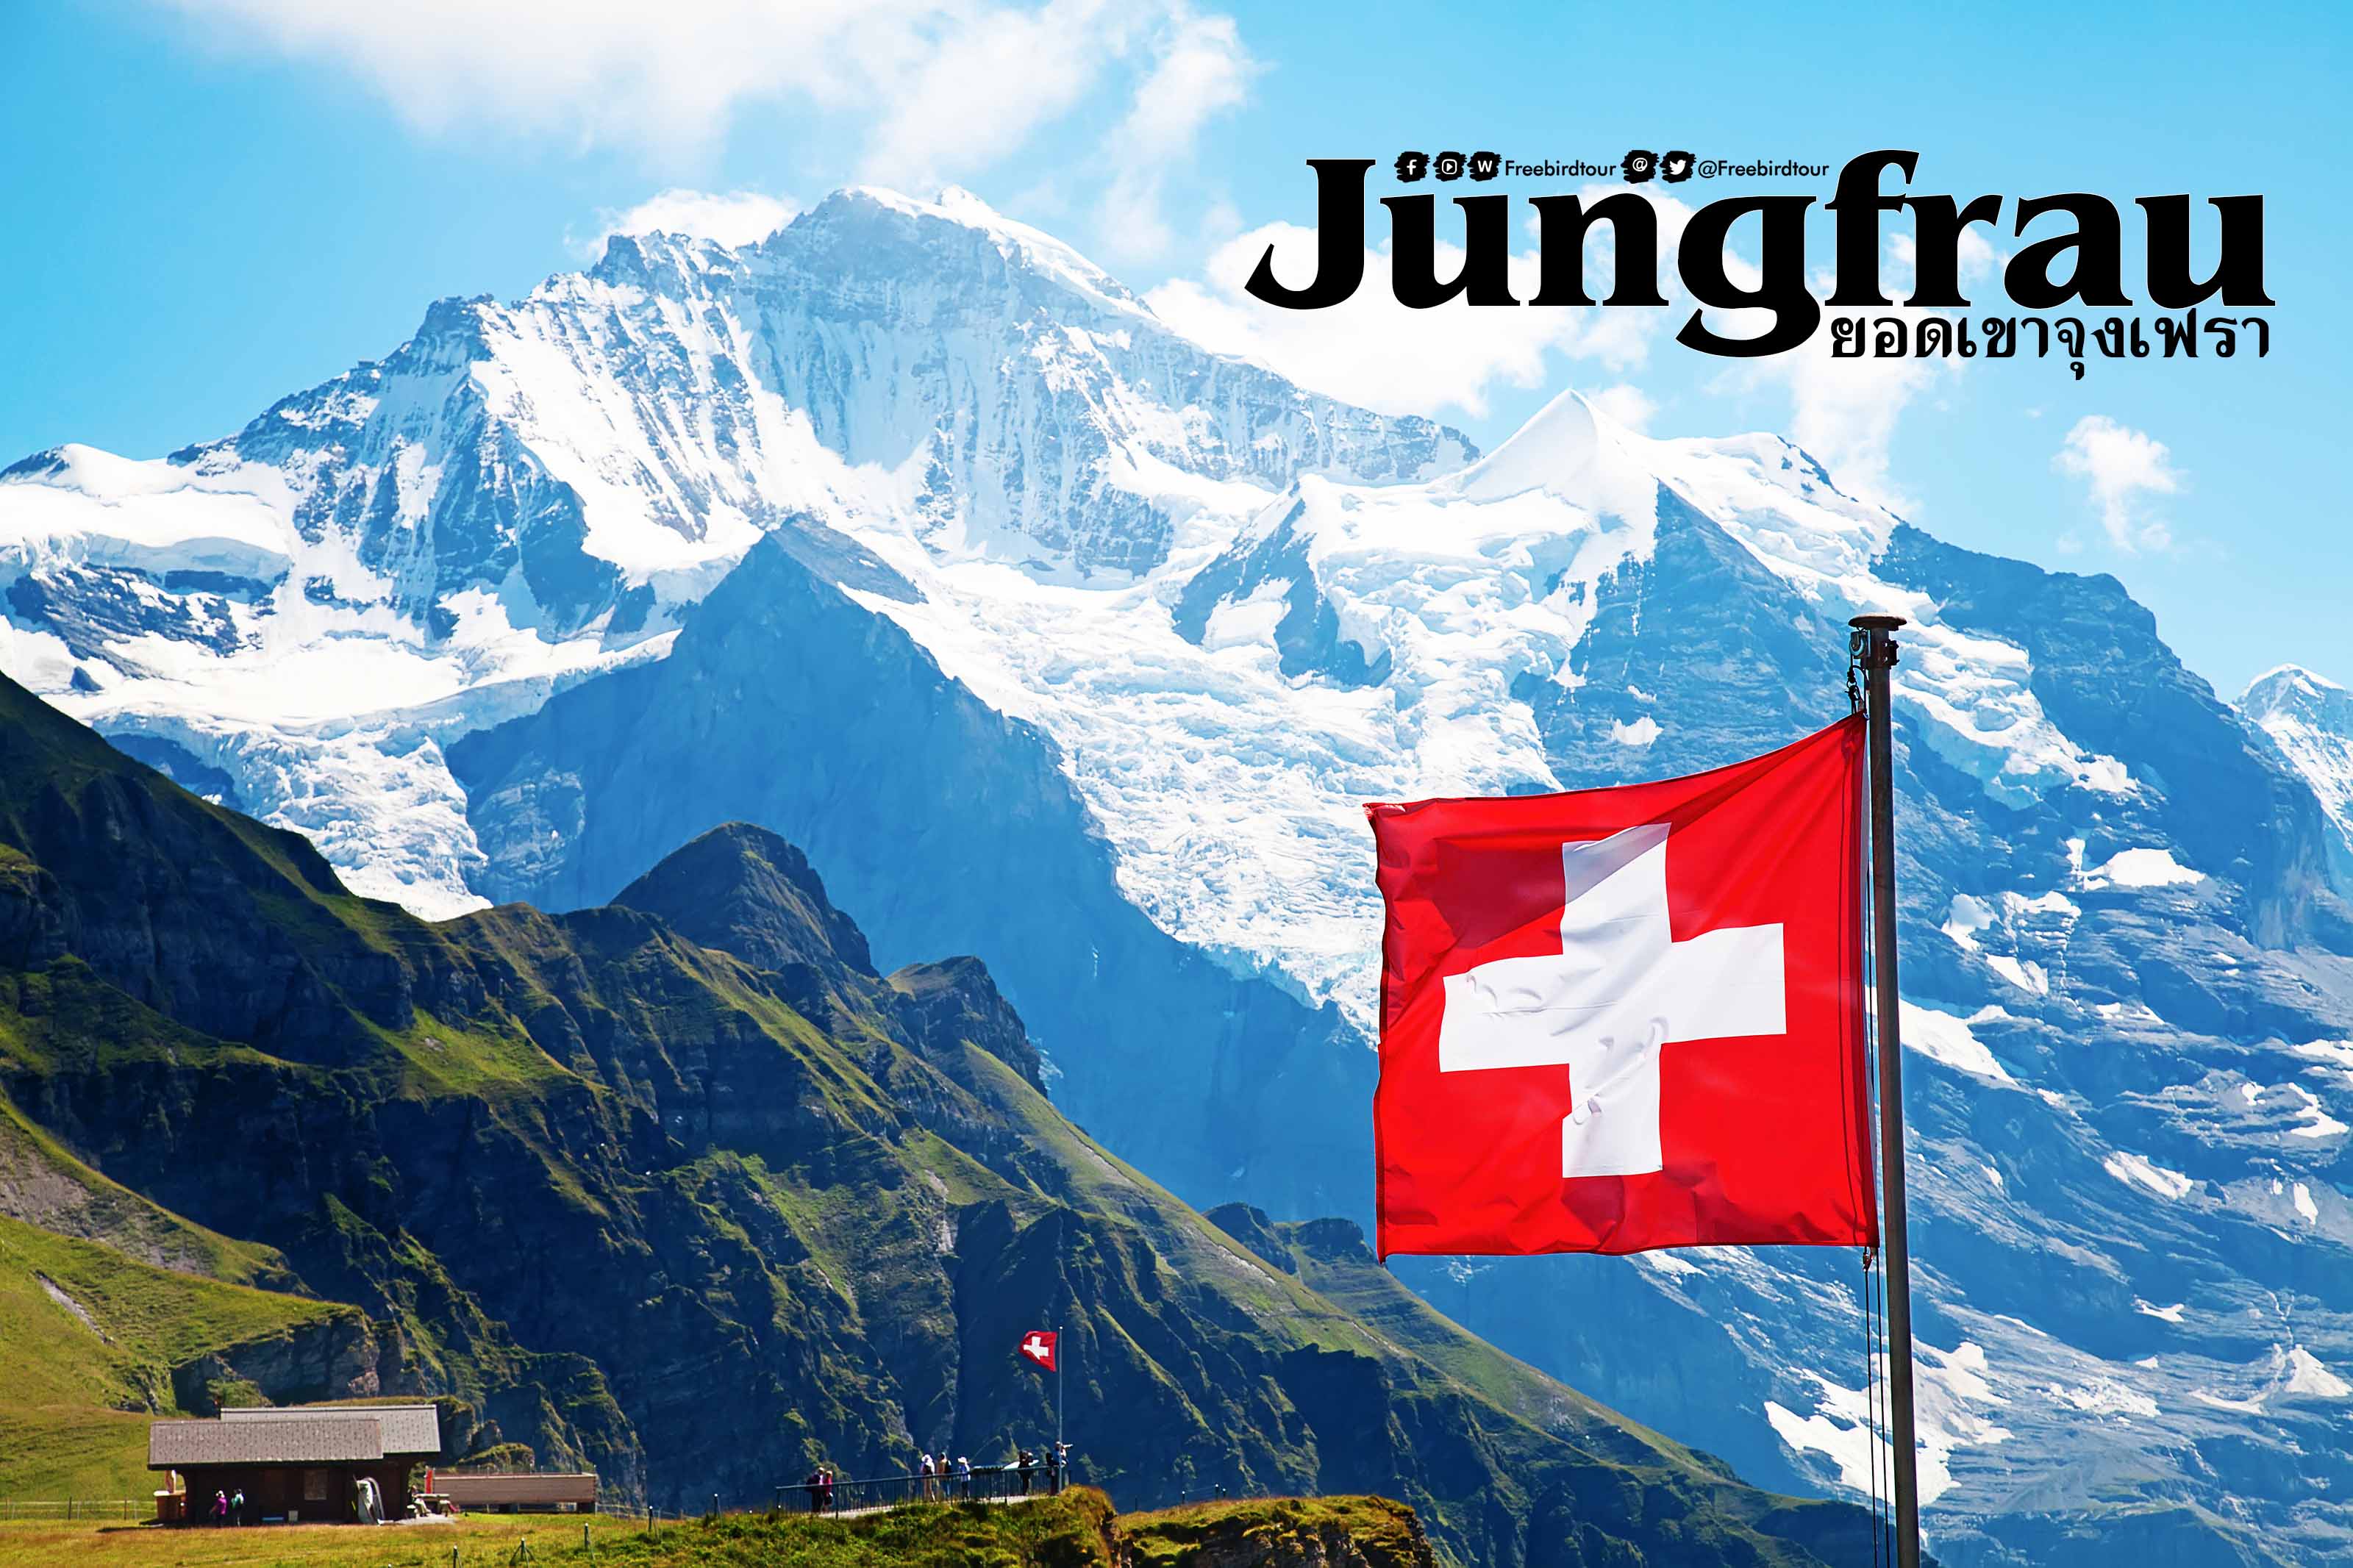 ยอดเขาจุงเฟรา (Jungfrau)